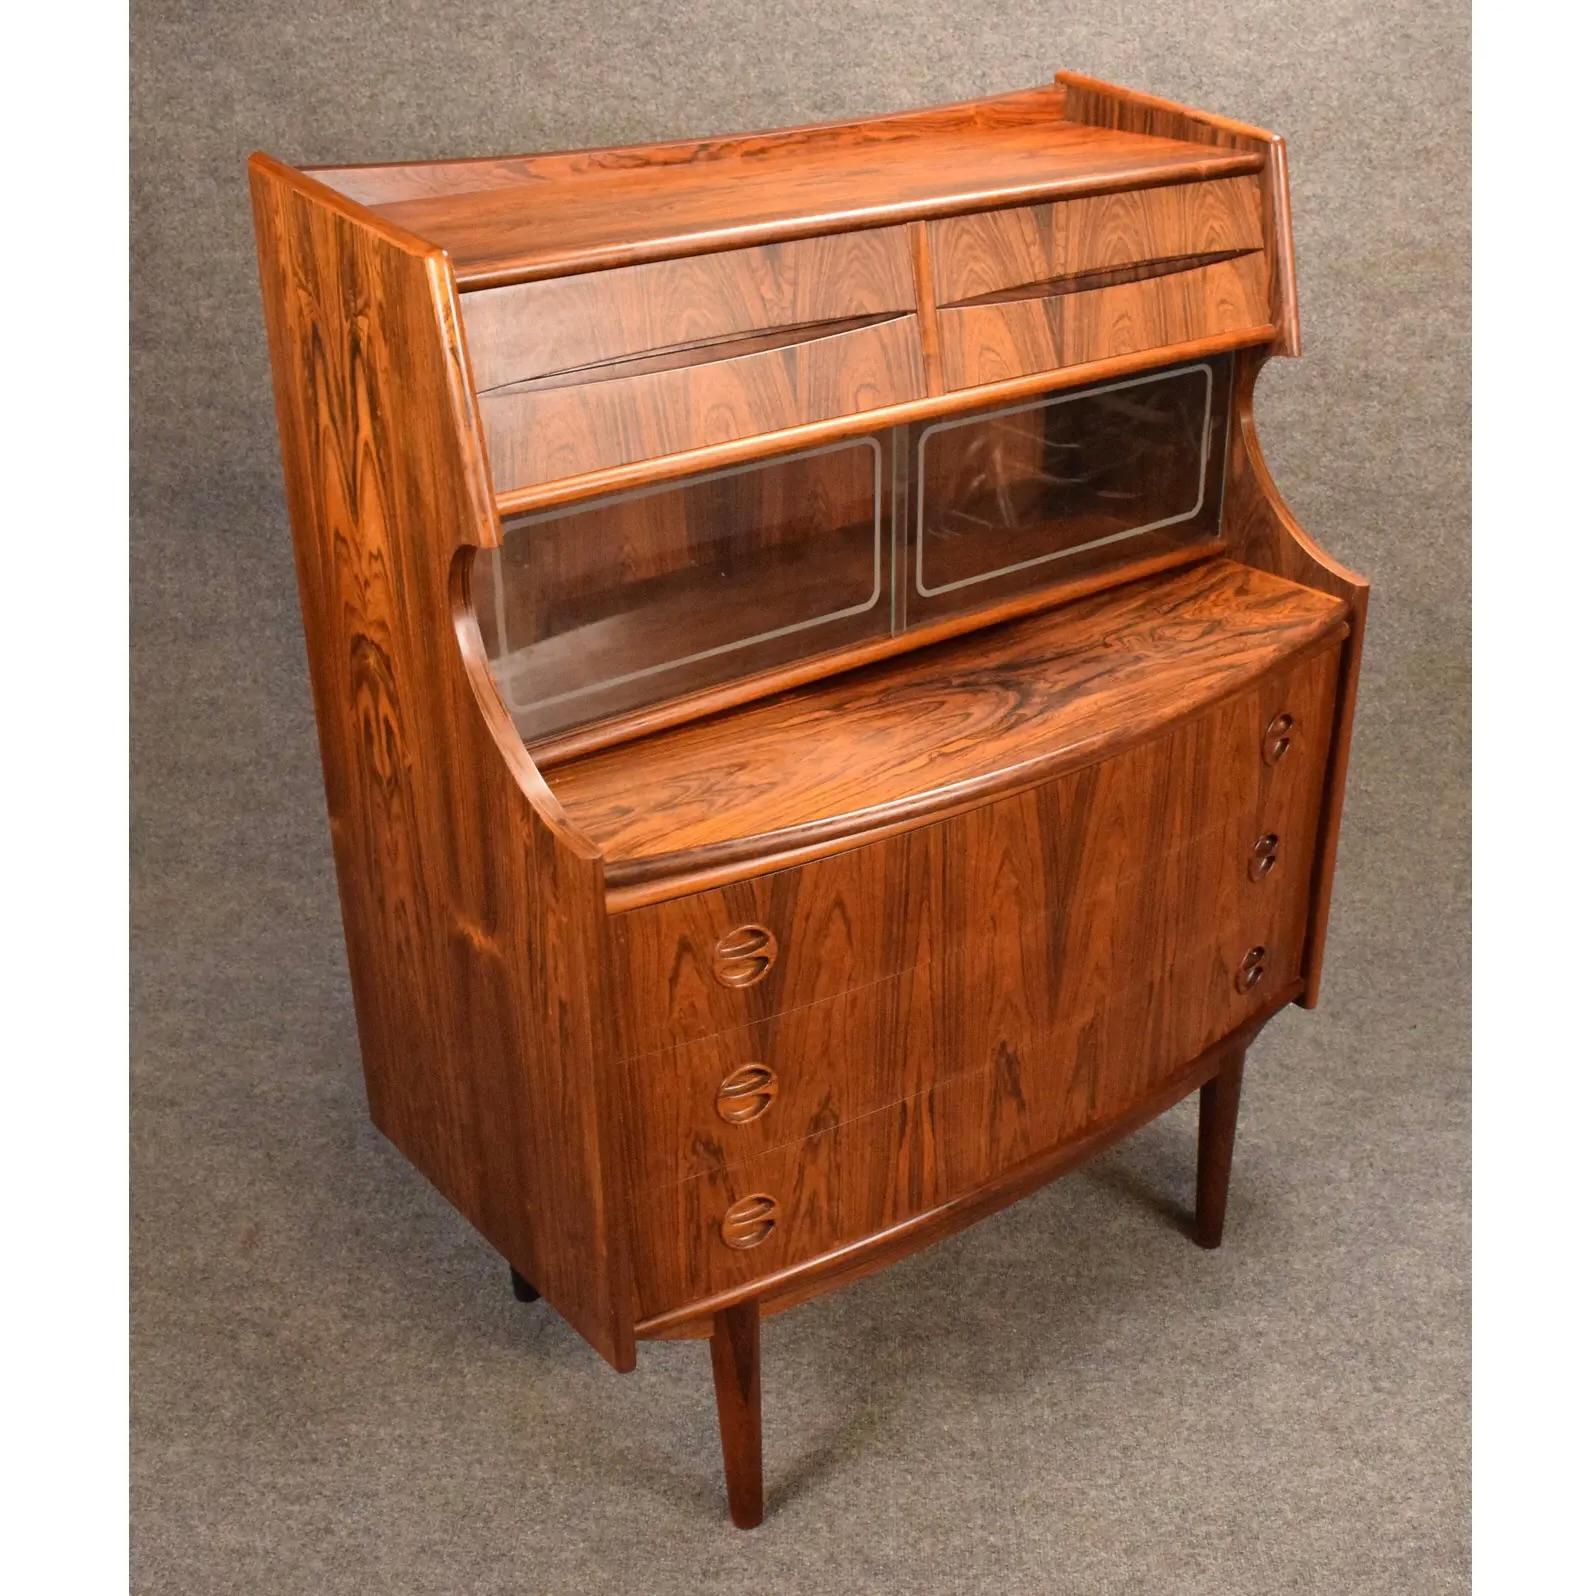 Vintage Danish Mid Century Modern Rosewood Secretary Desk by Falsig Mobler For Sale 1